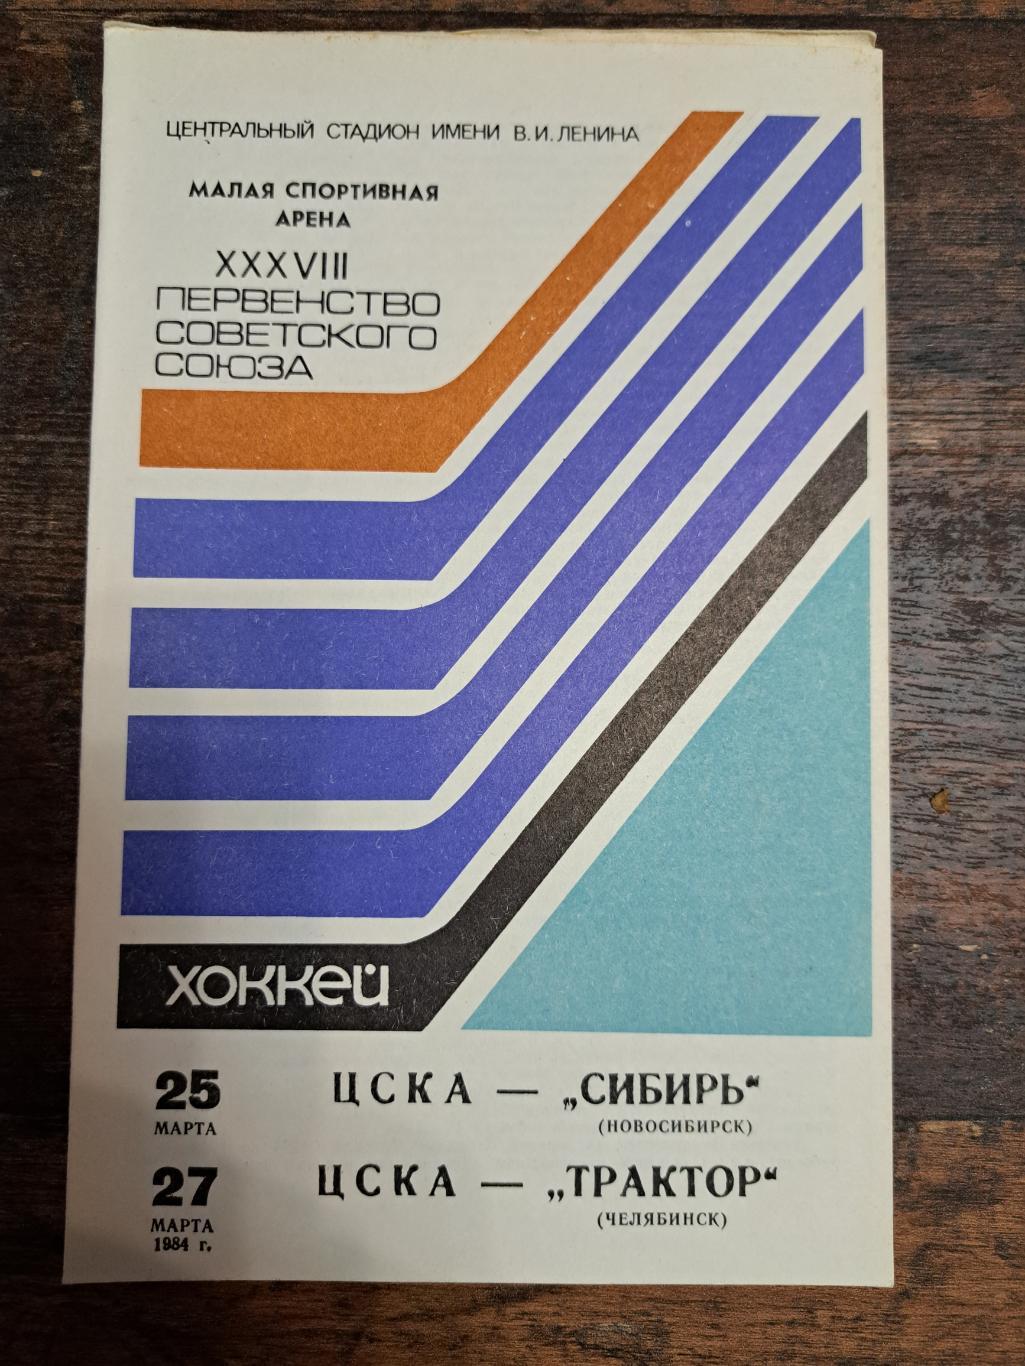 ЦСКА Москва-Сибирь, Трактор 25-27.03.1984 отл.состояние